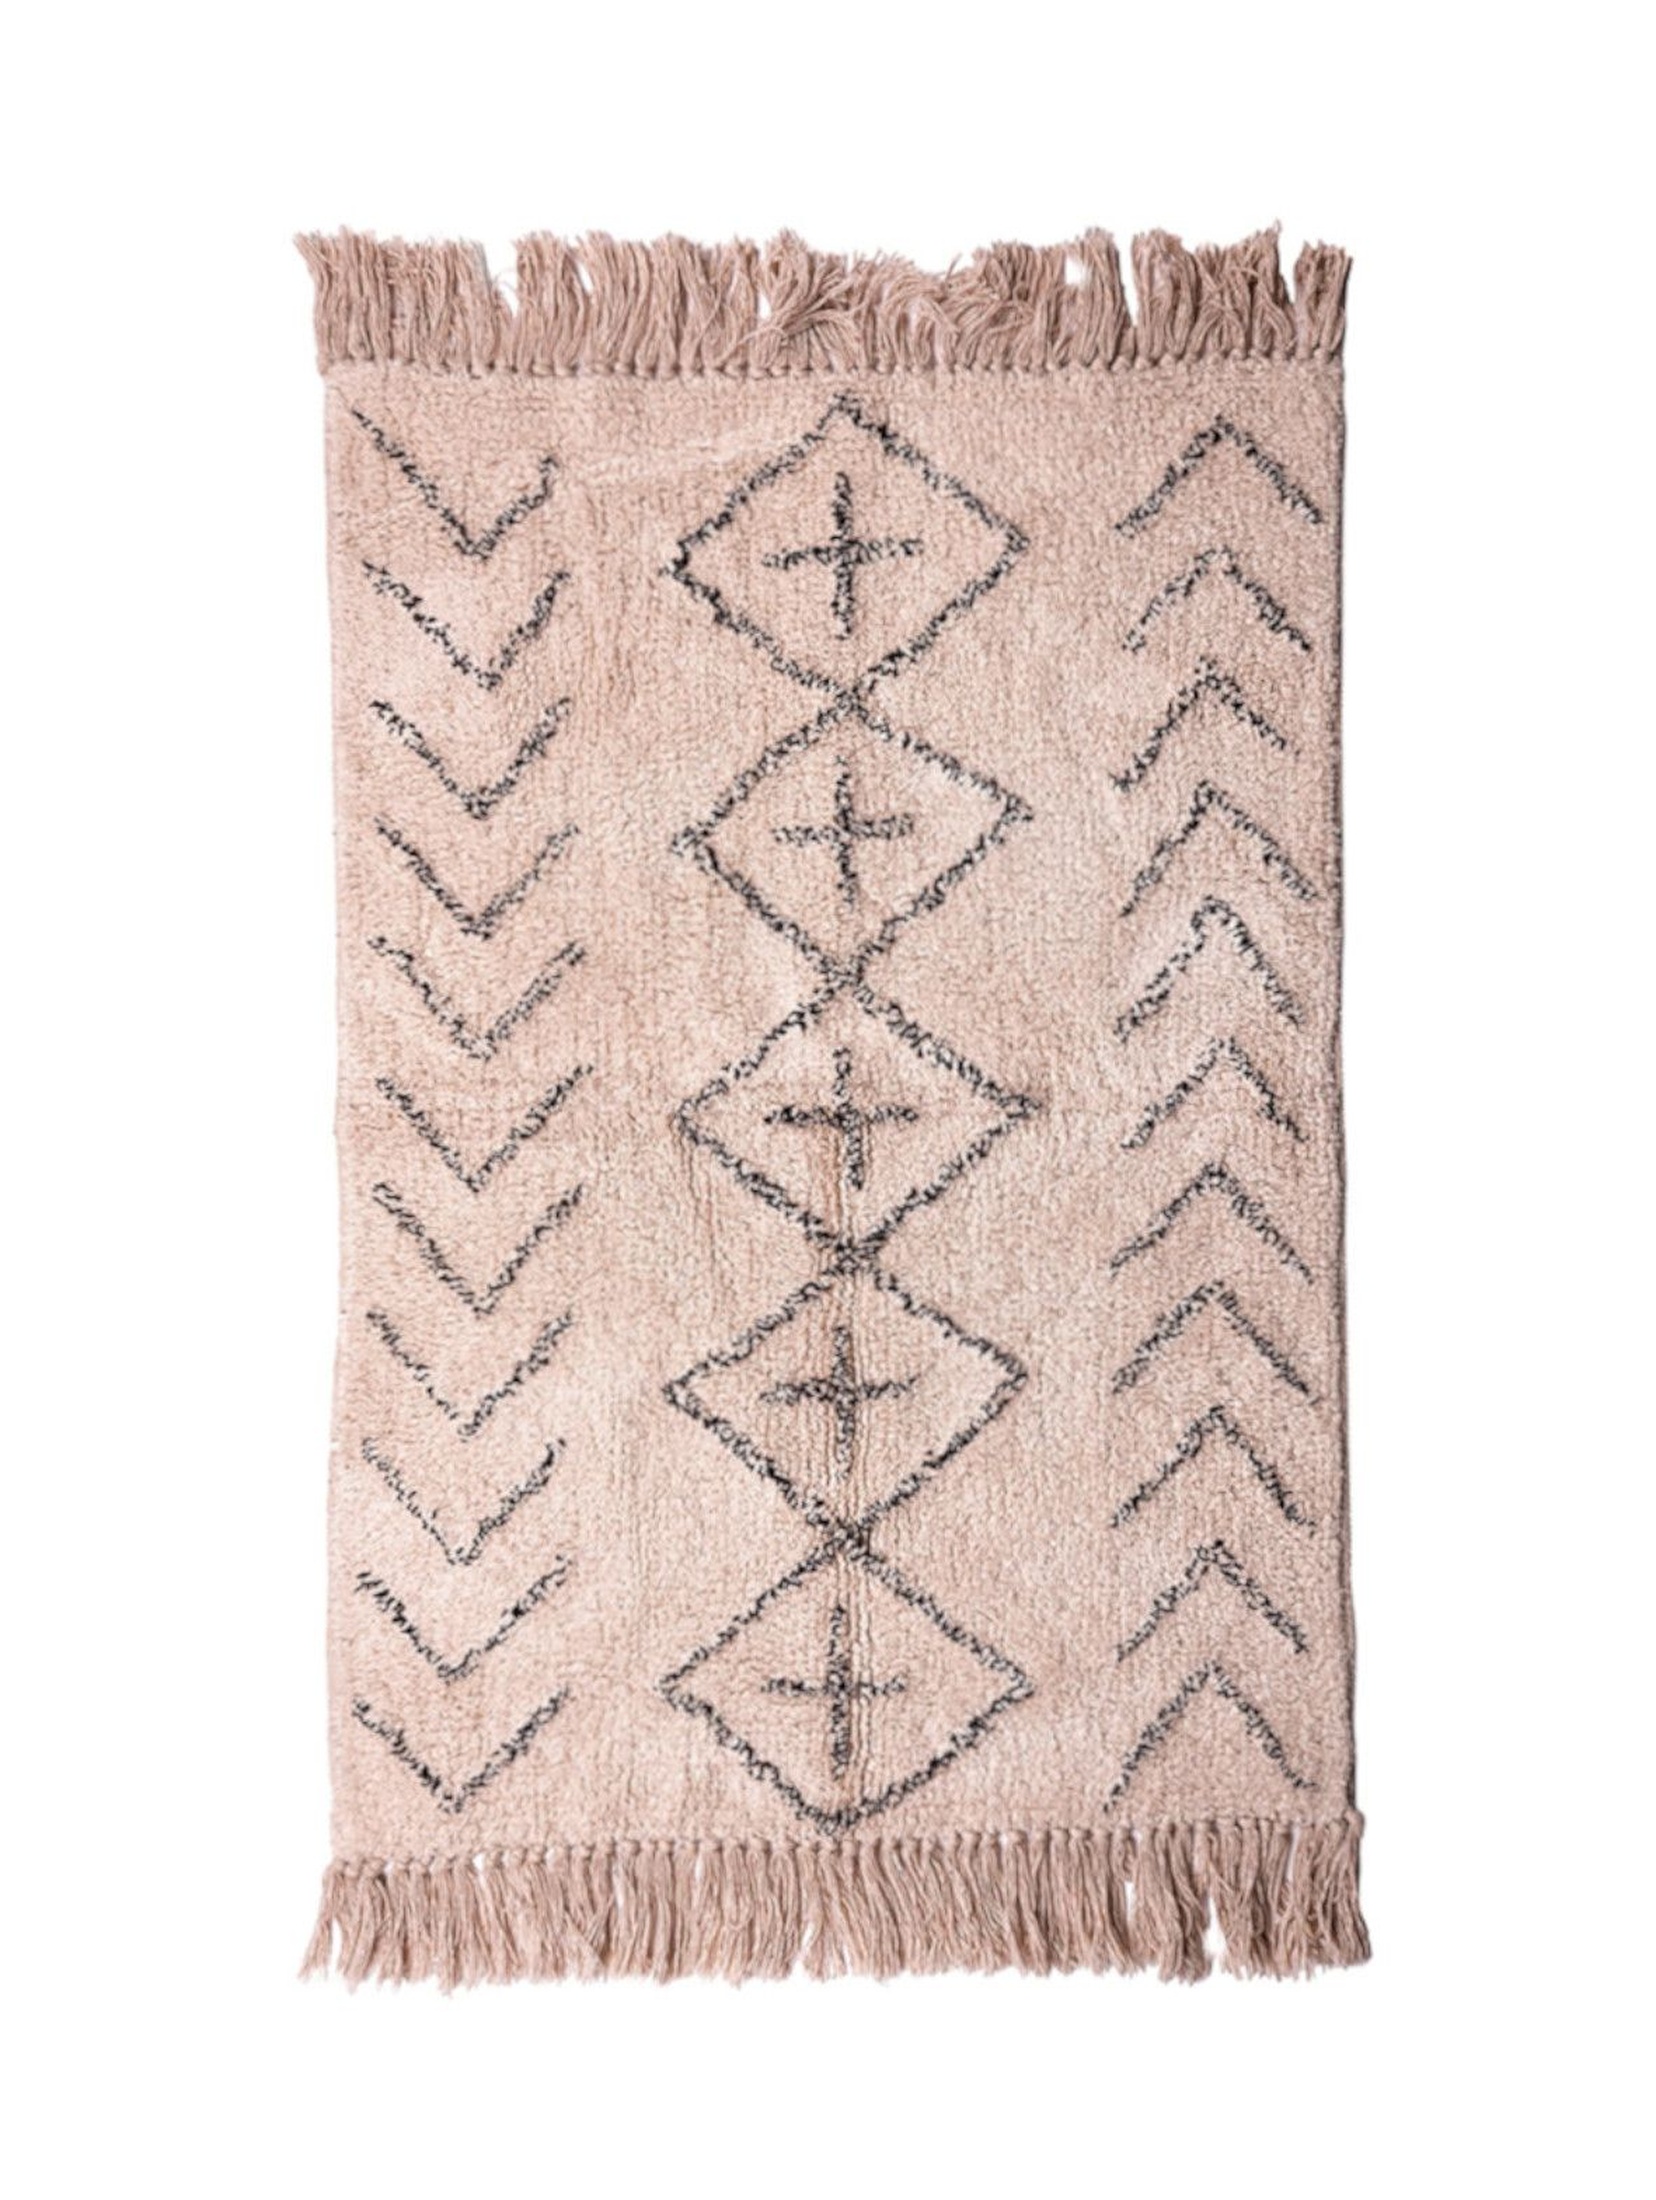 Bawełniany dywanik  z wzorem geometrycznym  60x90  cm - beżowy